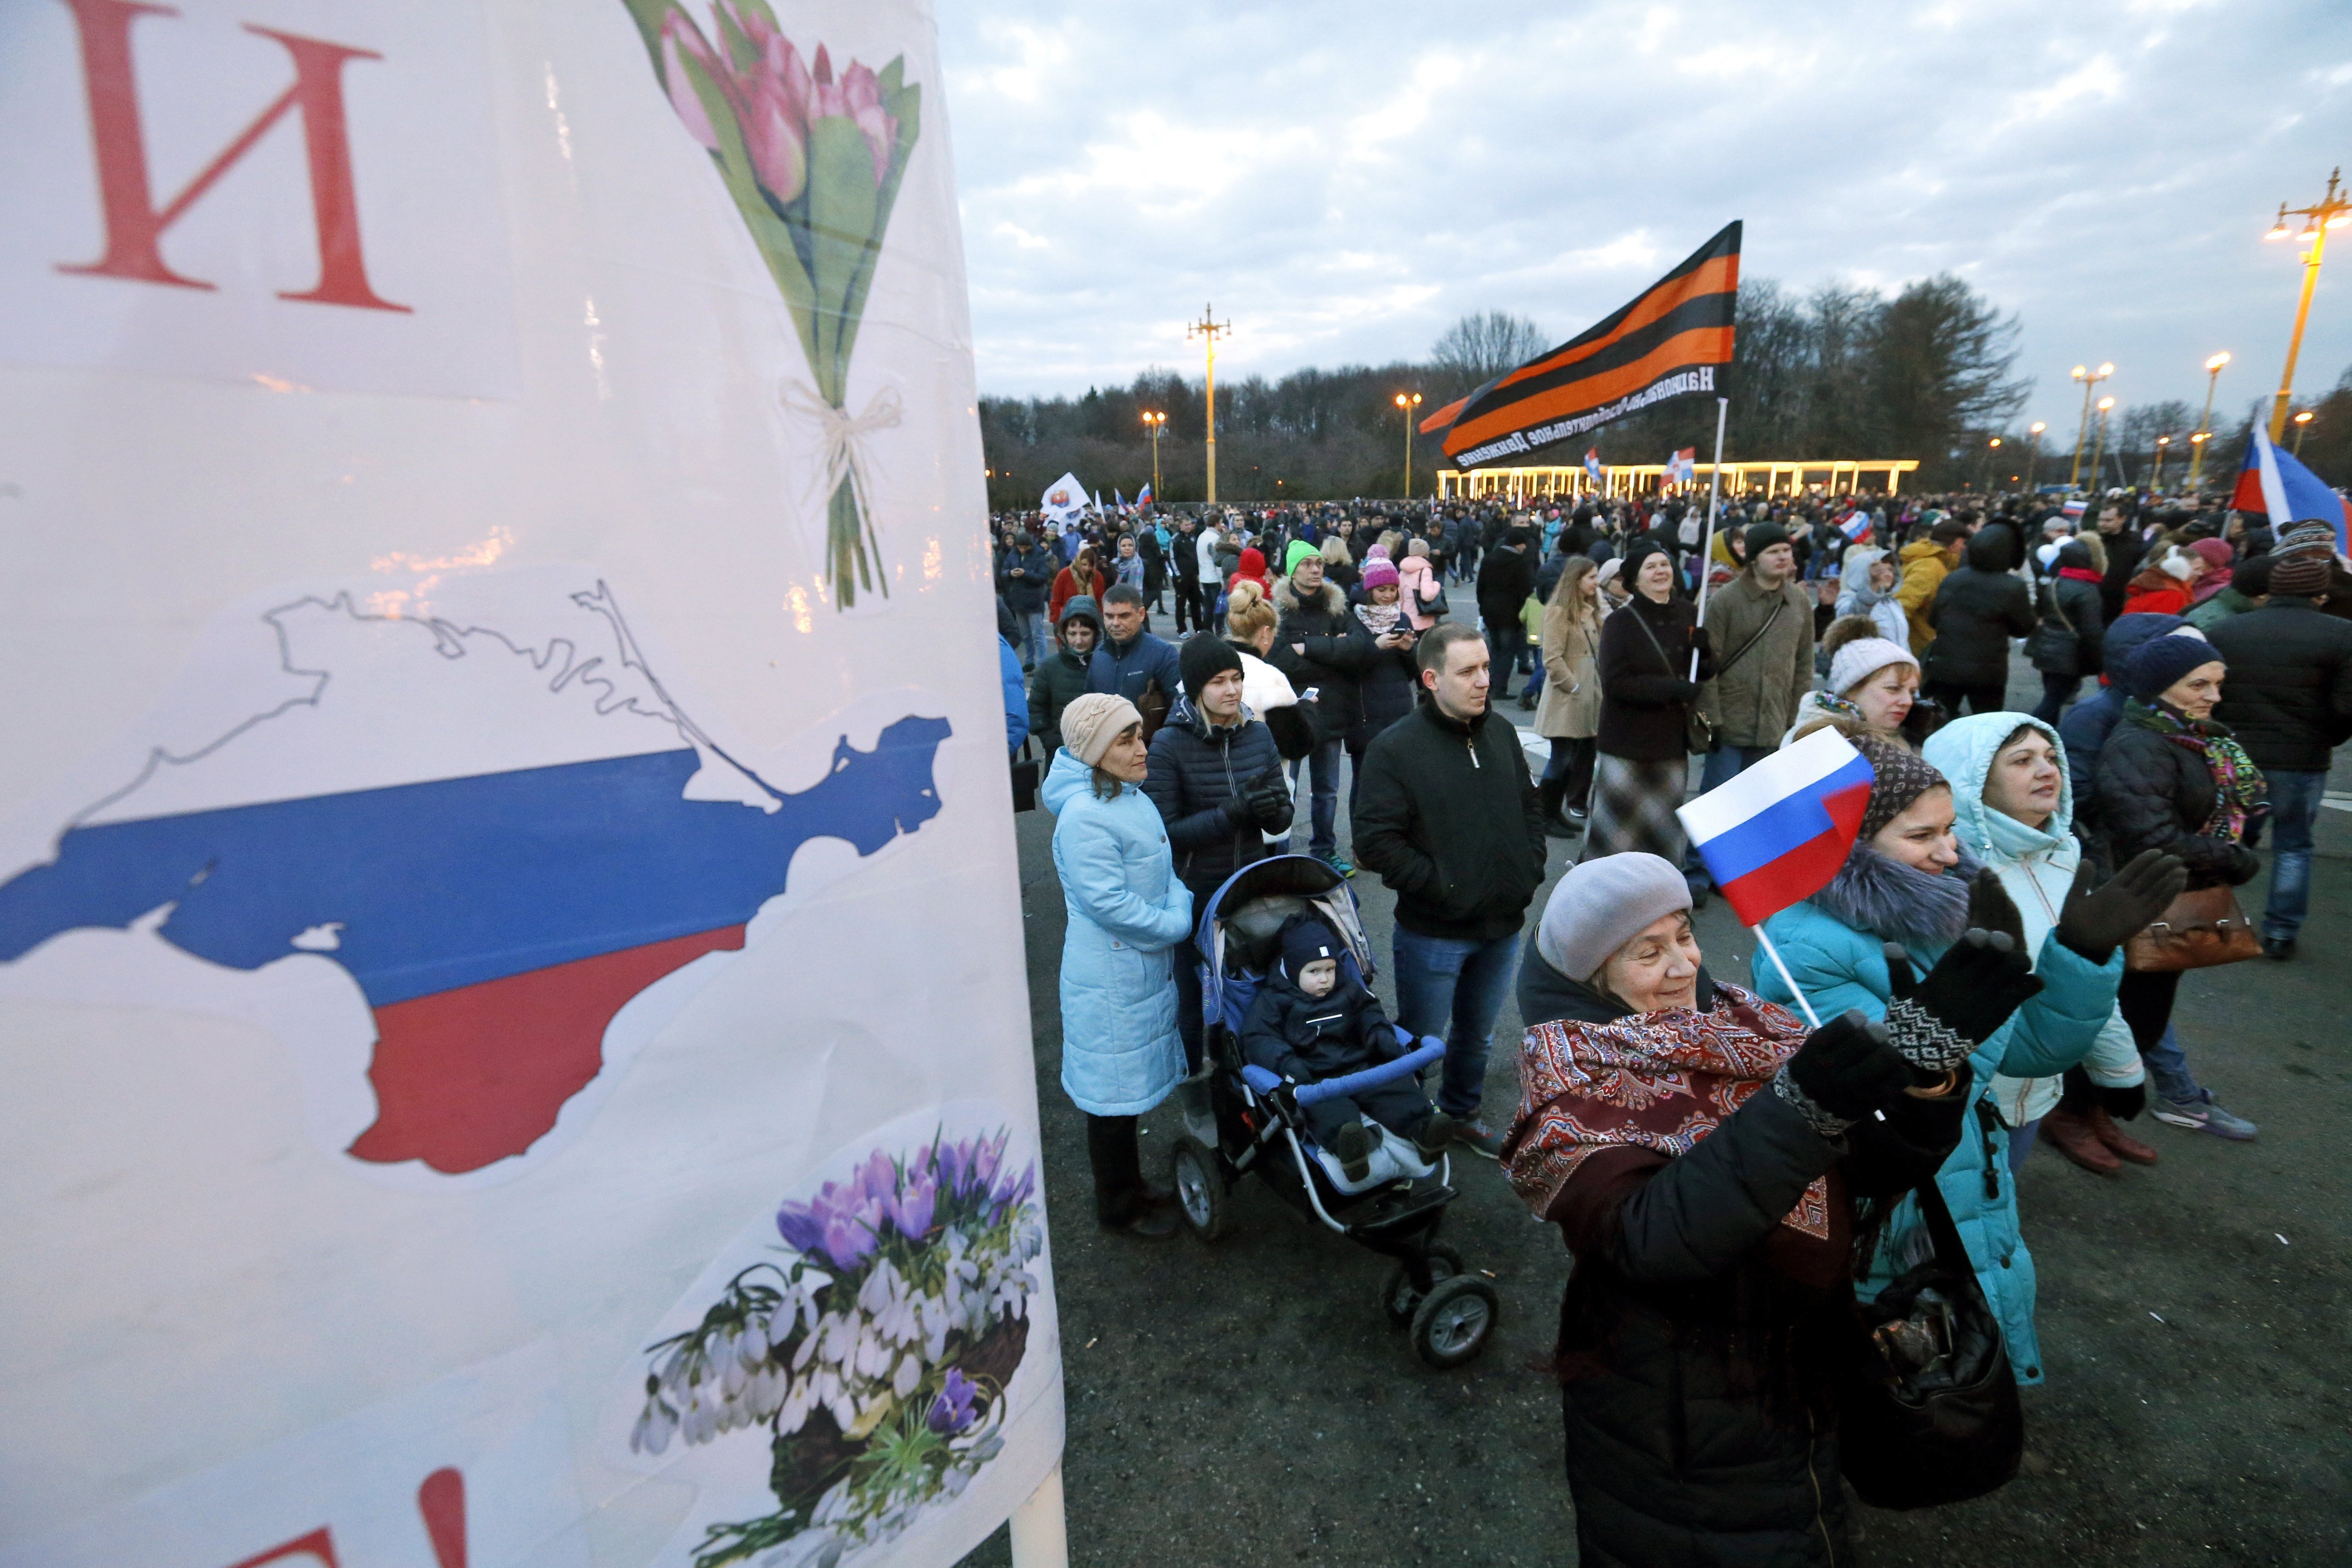 Crimea porta ja tres anys en mans dels russos